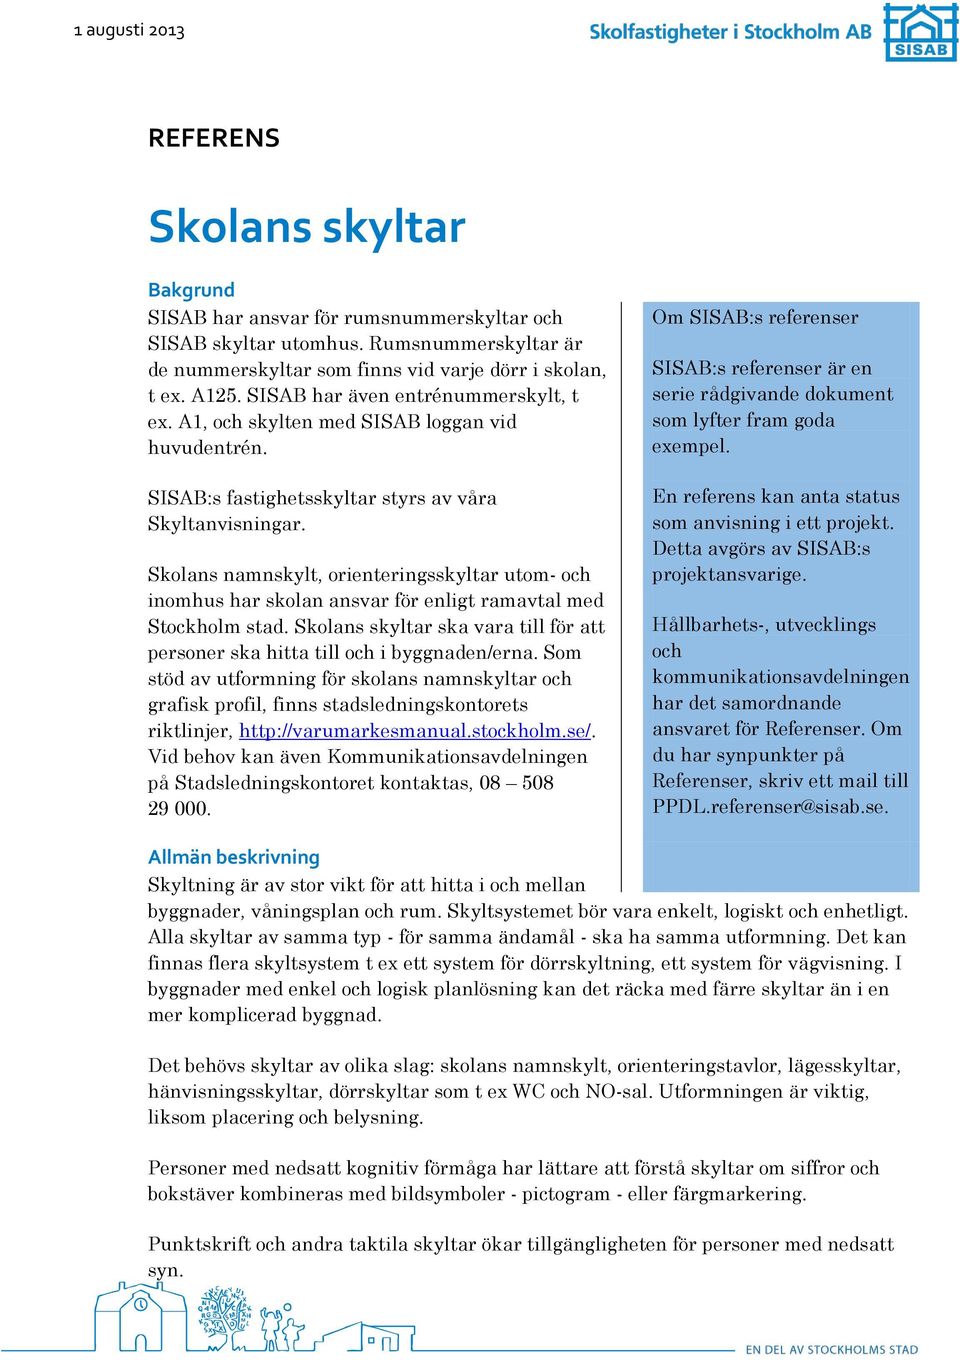 Skolans namnskylt, orienteringsskyltar utom- och inomhus har skolan ansvar för enligt ramavtal med Stockholm stad. Skolans skyltar ska vara till för att personer ska hitta till och i byggnaden/erna.